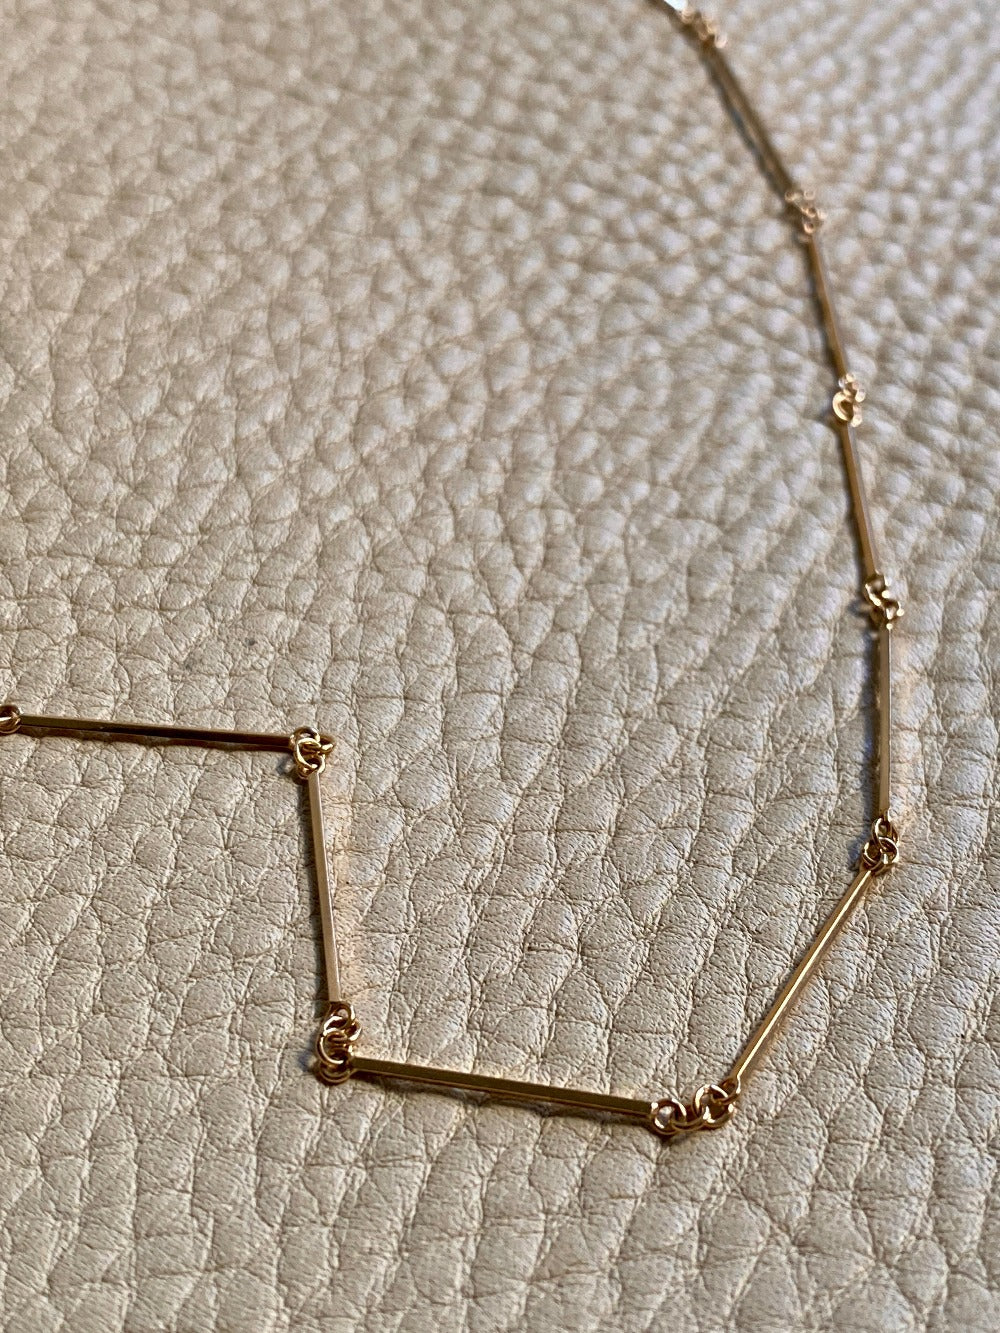 Dainty gold bar link necklace - 18k gold - 20.4 inch length - Swedish vintage 1954